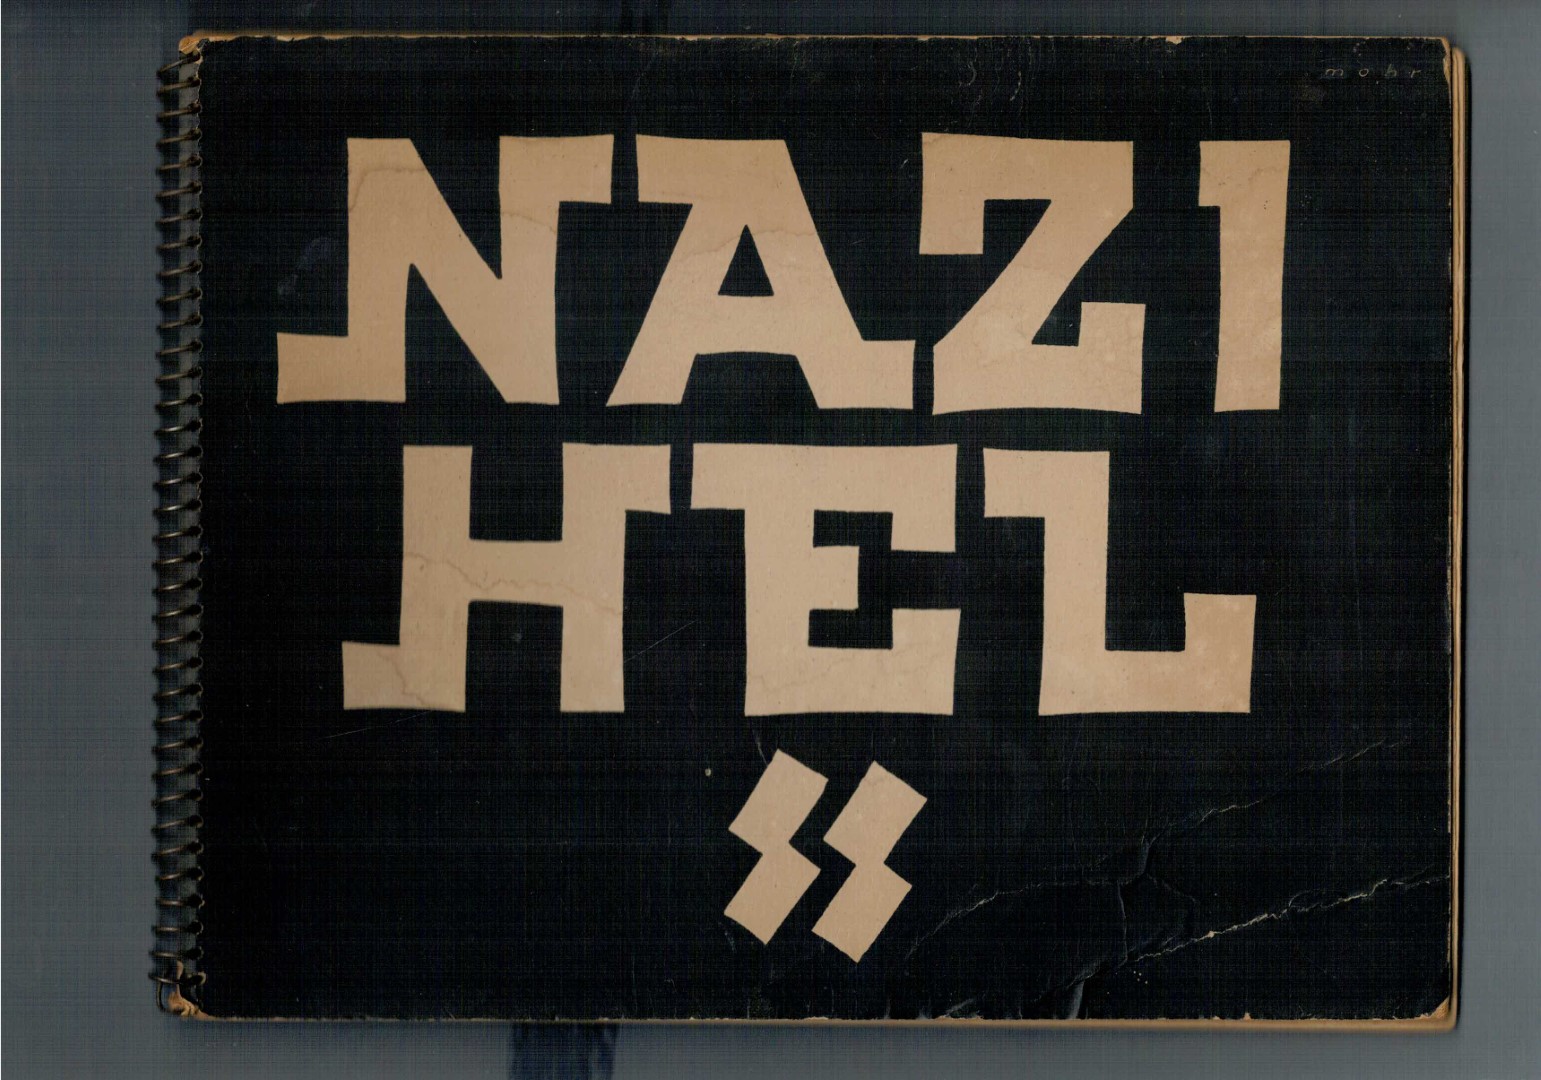 Poll, Willem van de - Nazi hel SS/ Nazihel SS. (Uitgave van oorlogsfoto's met medewerking van de P.W.D. Shaef Mission Netherlands, bijeengebracht door Willem van de Poll.).